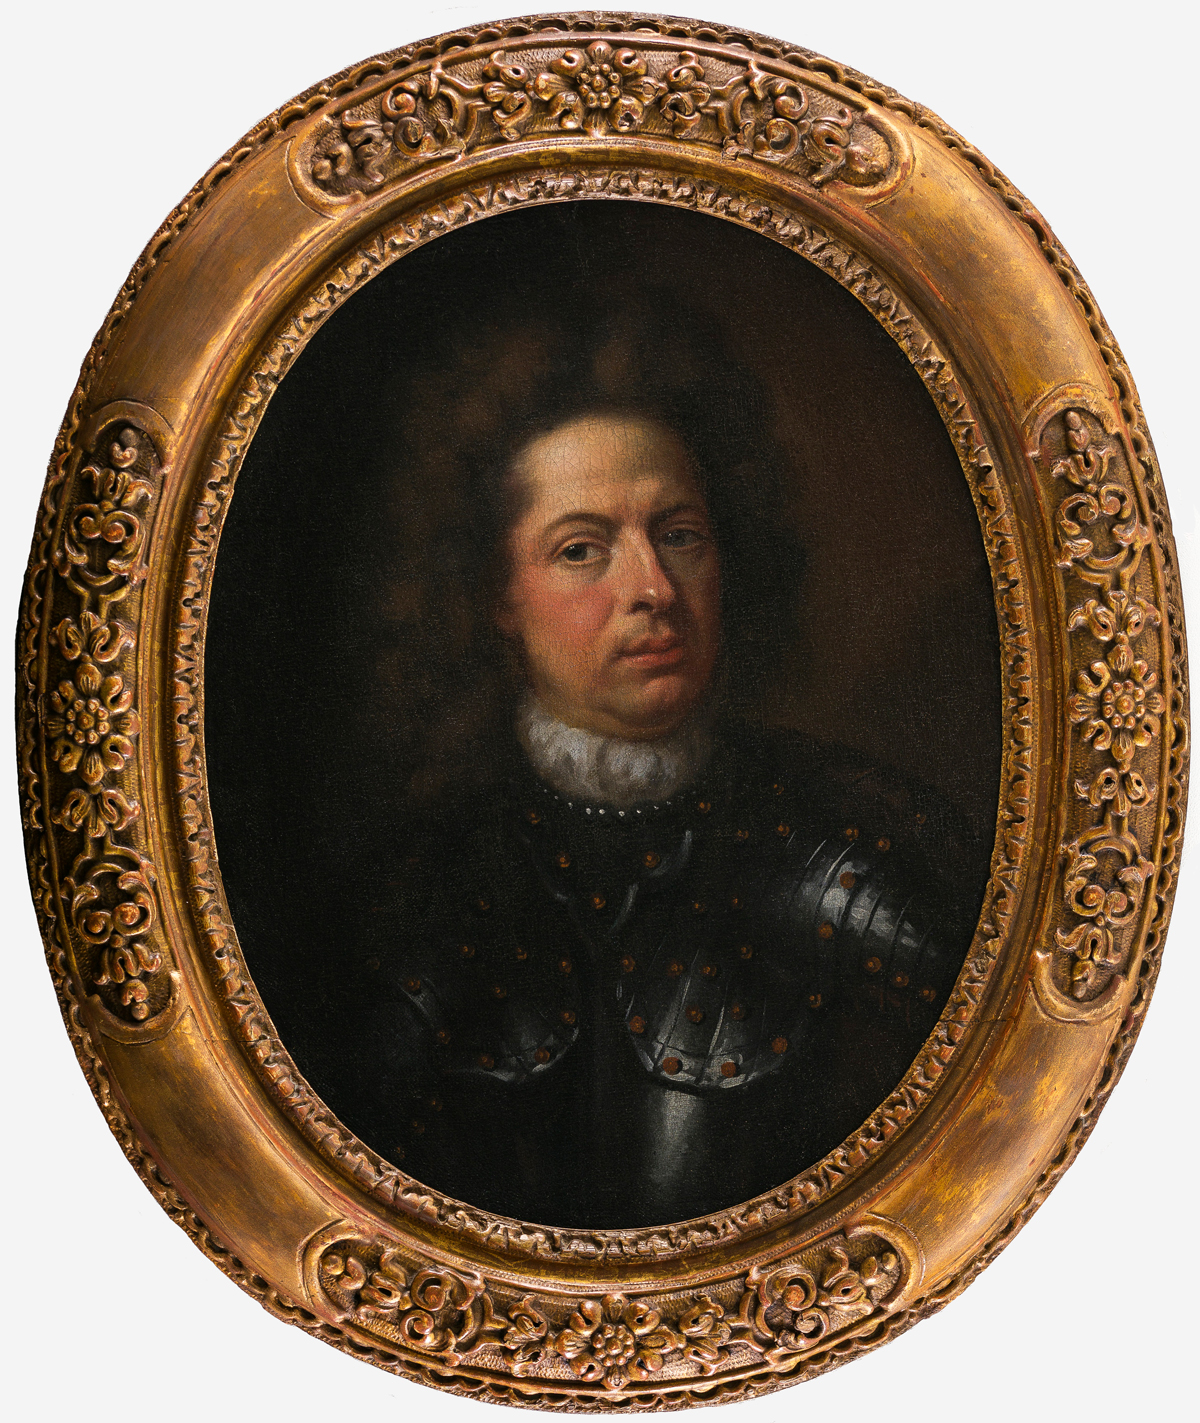 Johann Friedrich Bodecker